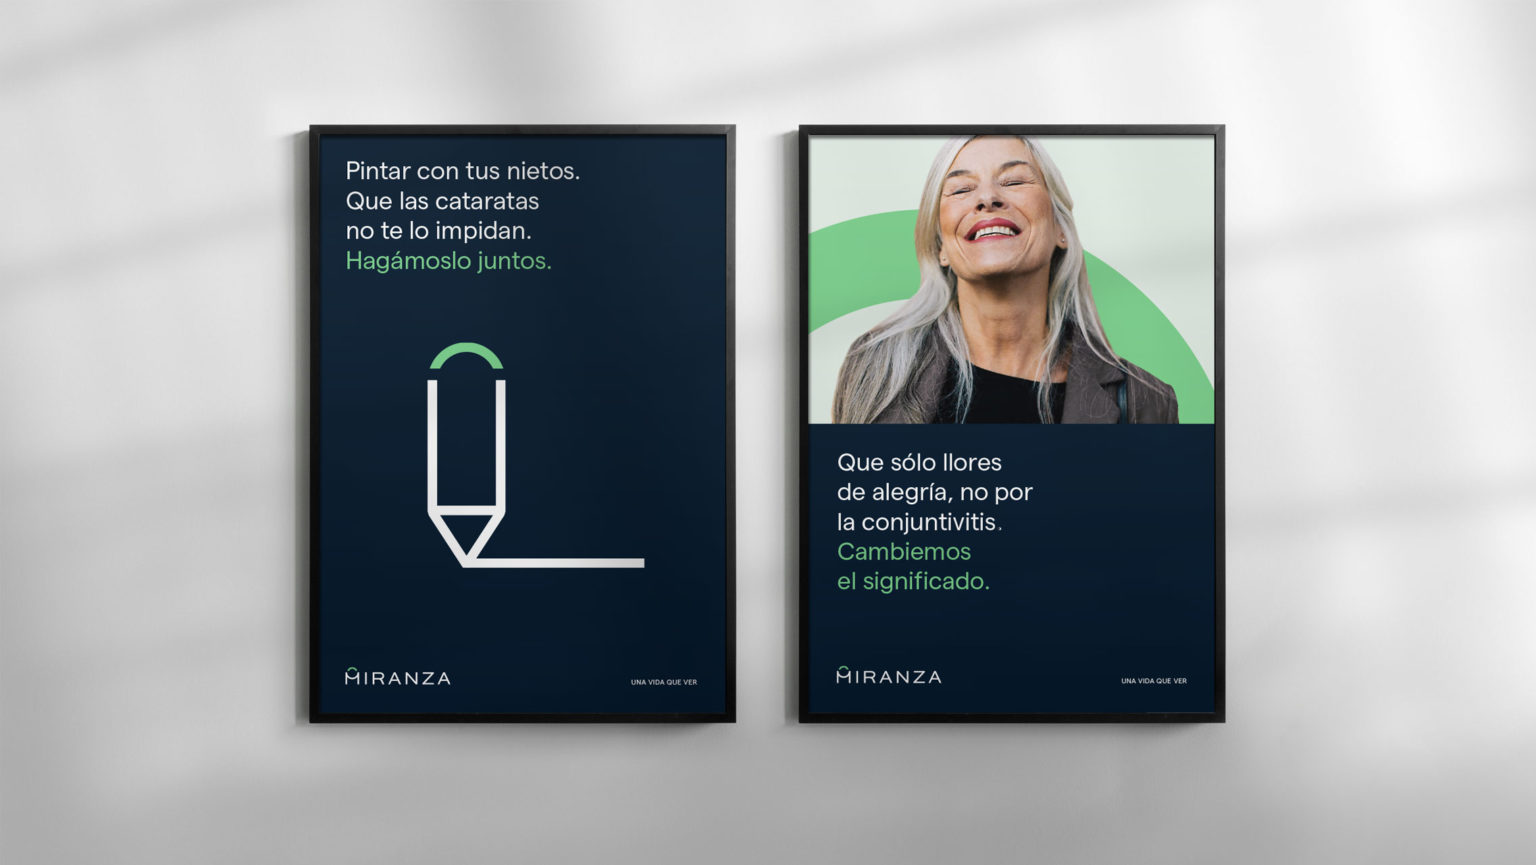 Miranza_posters-1536×865-1